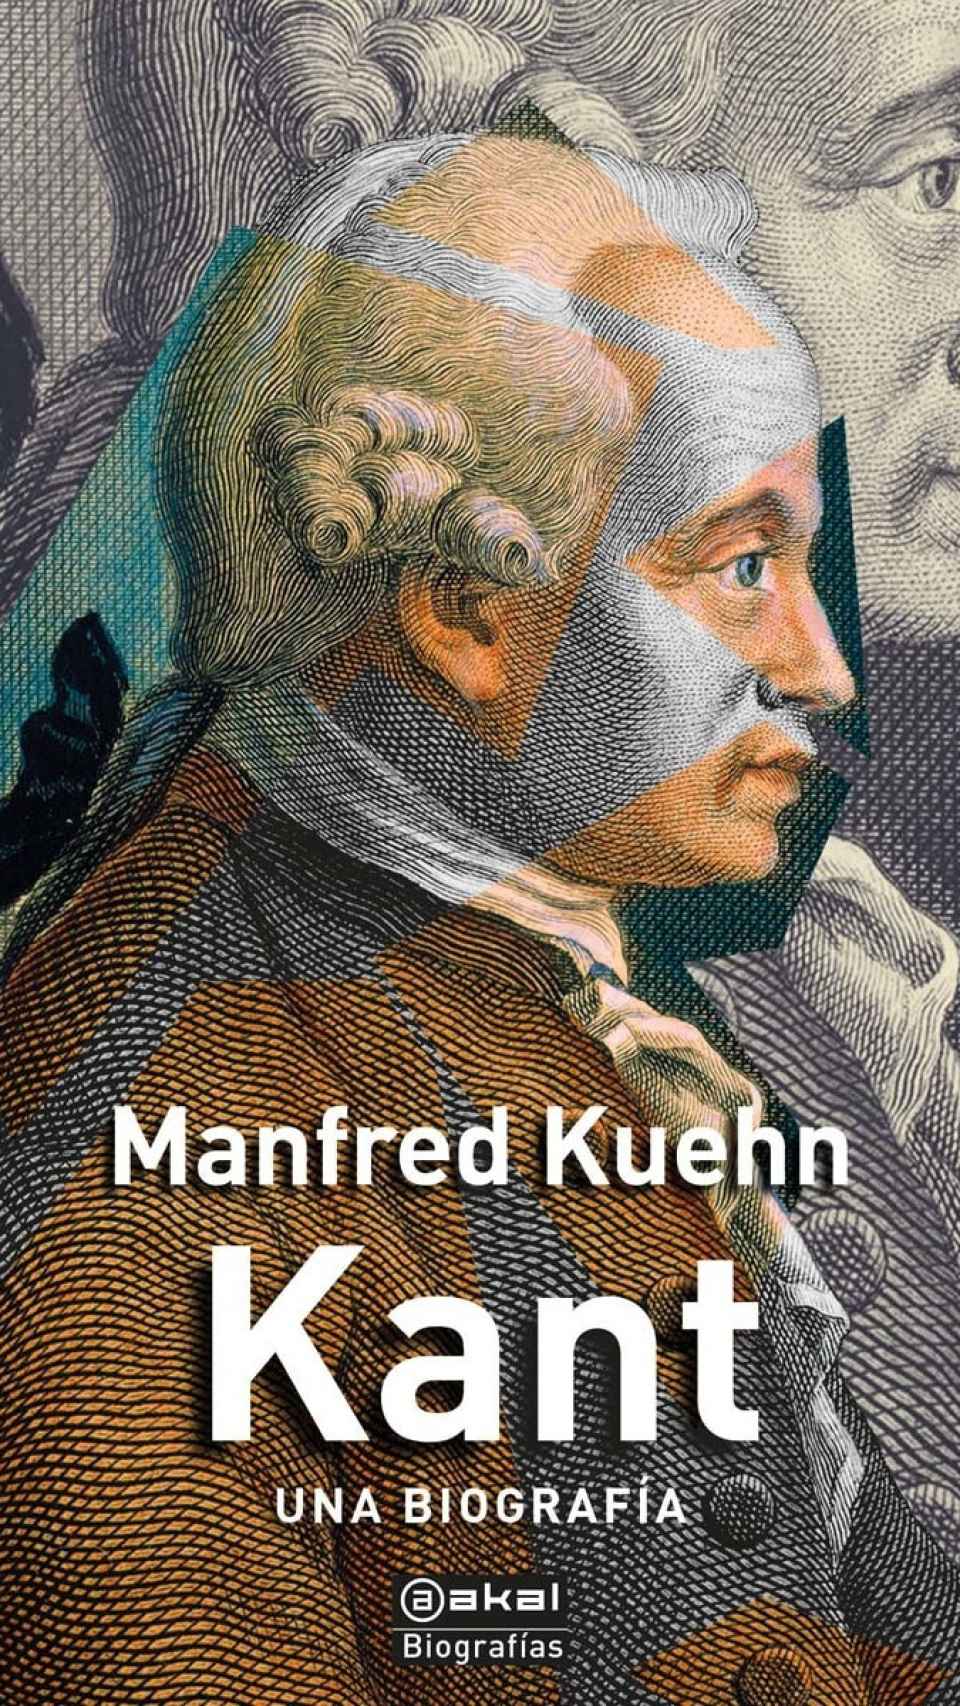 Portada de la biografía de Kant